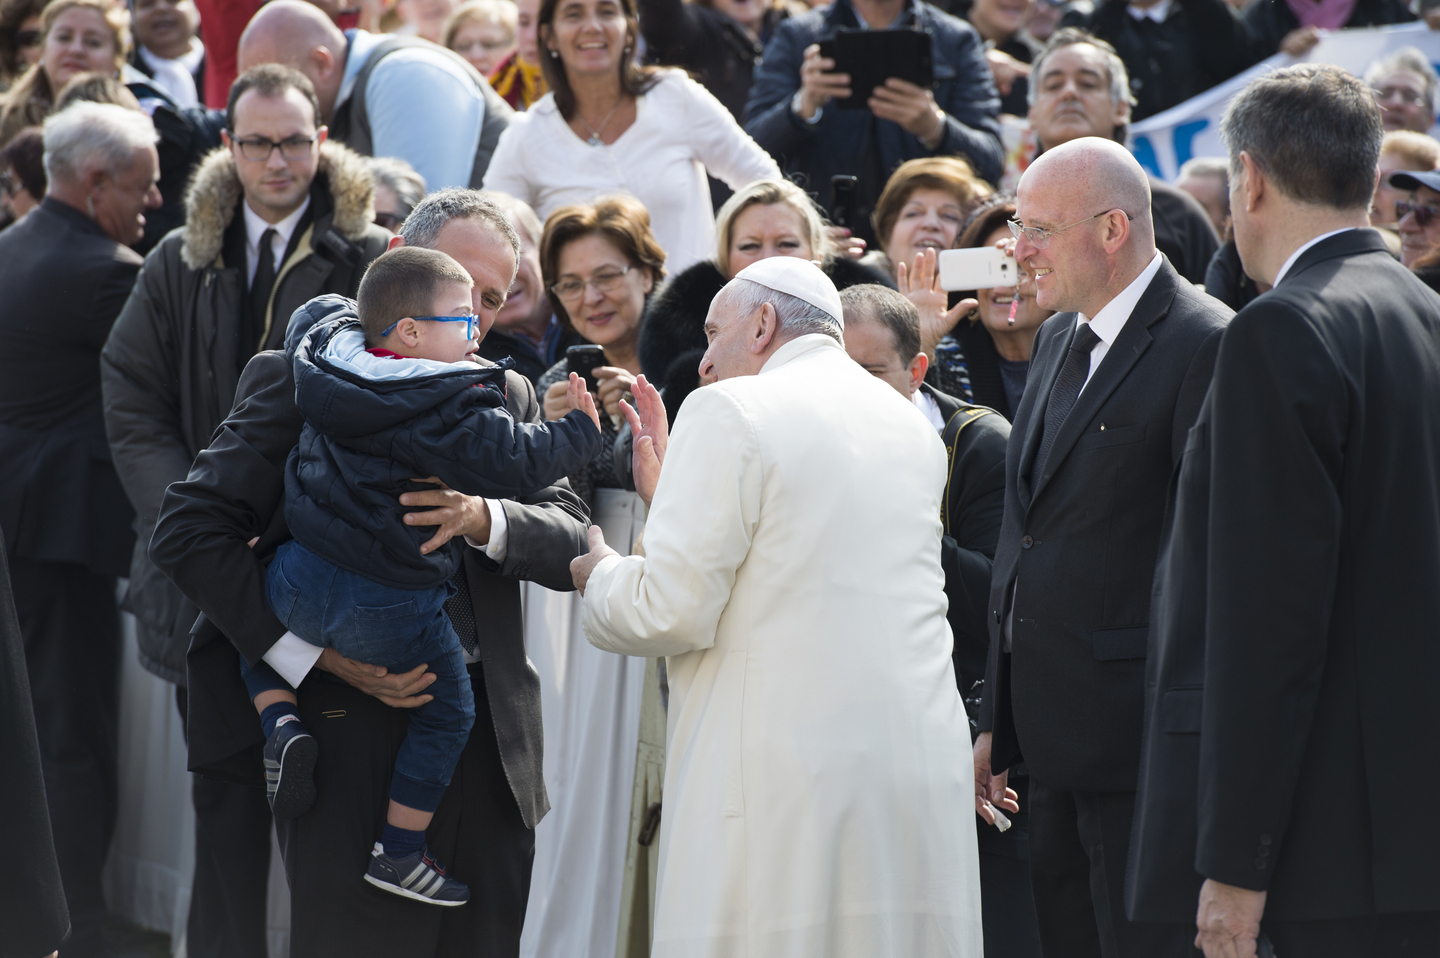 El Papa se detiene a saludar a un niño con síndrome de down